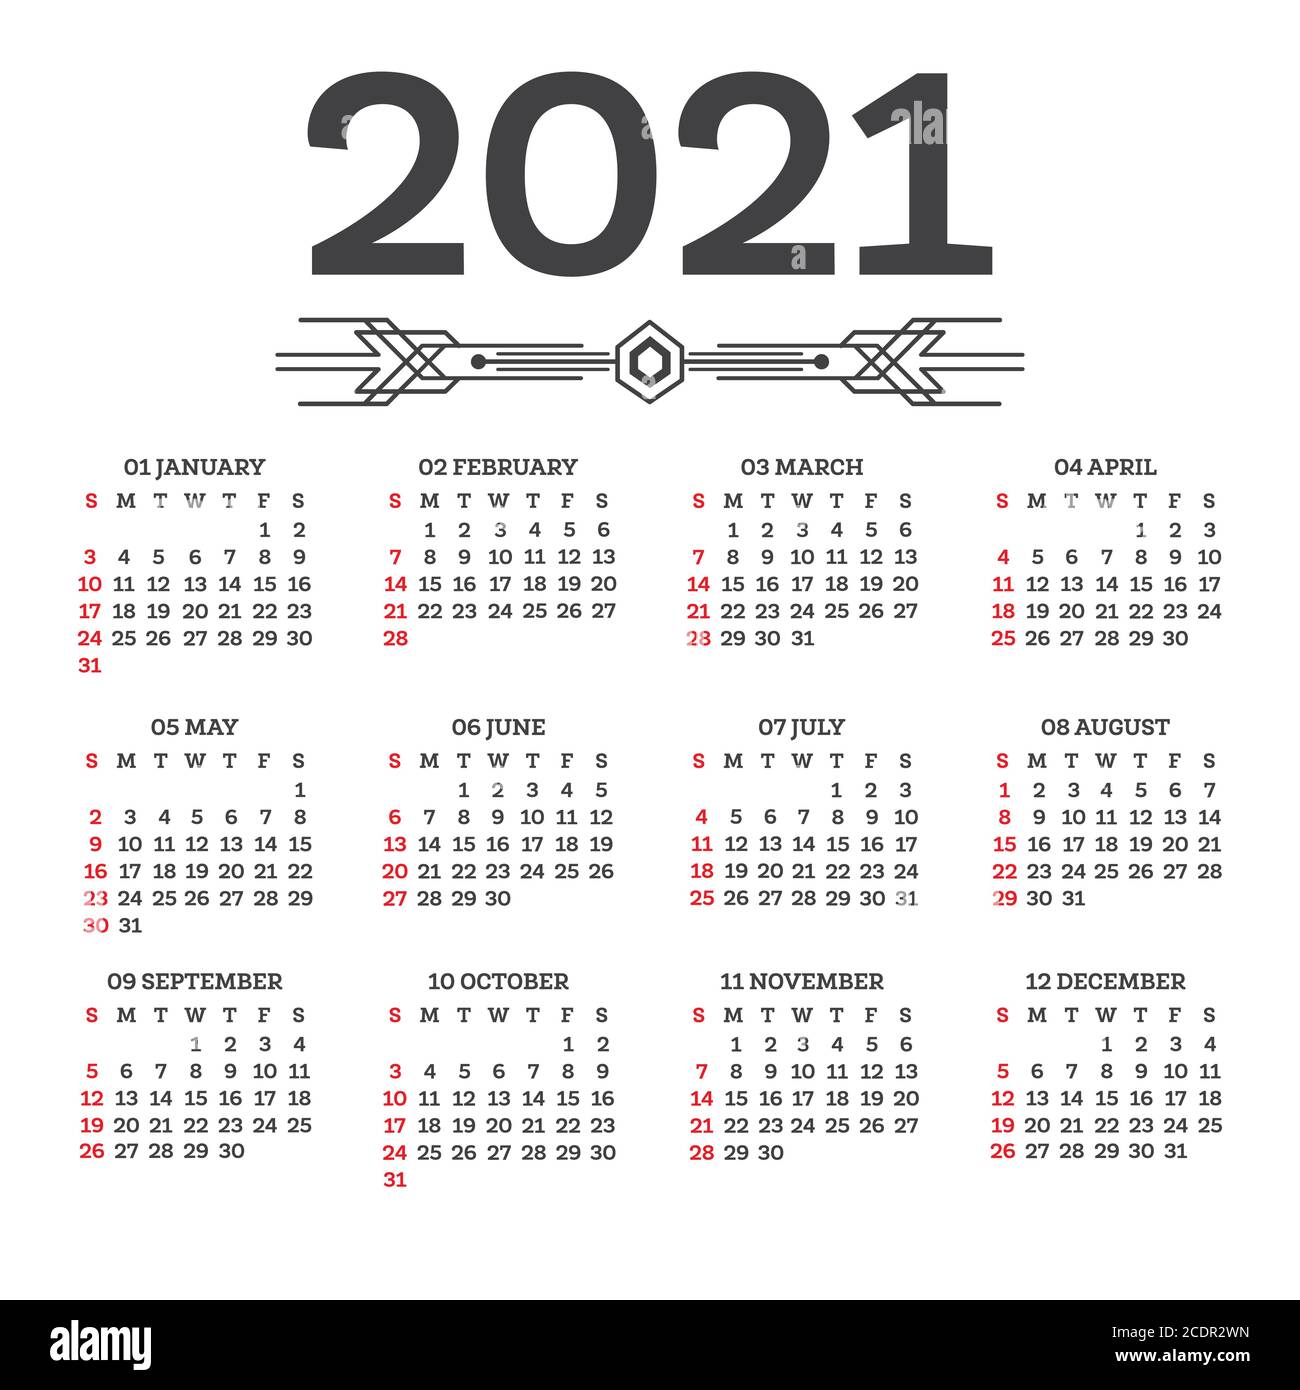 Ilustracion De Calendario 2021 La Semana Comienza El Domingo Cuadricula Images 